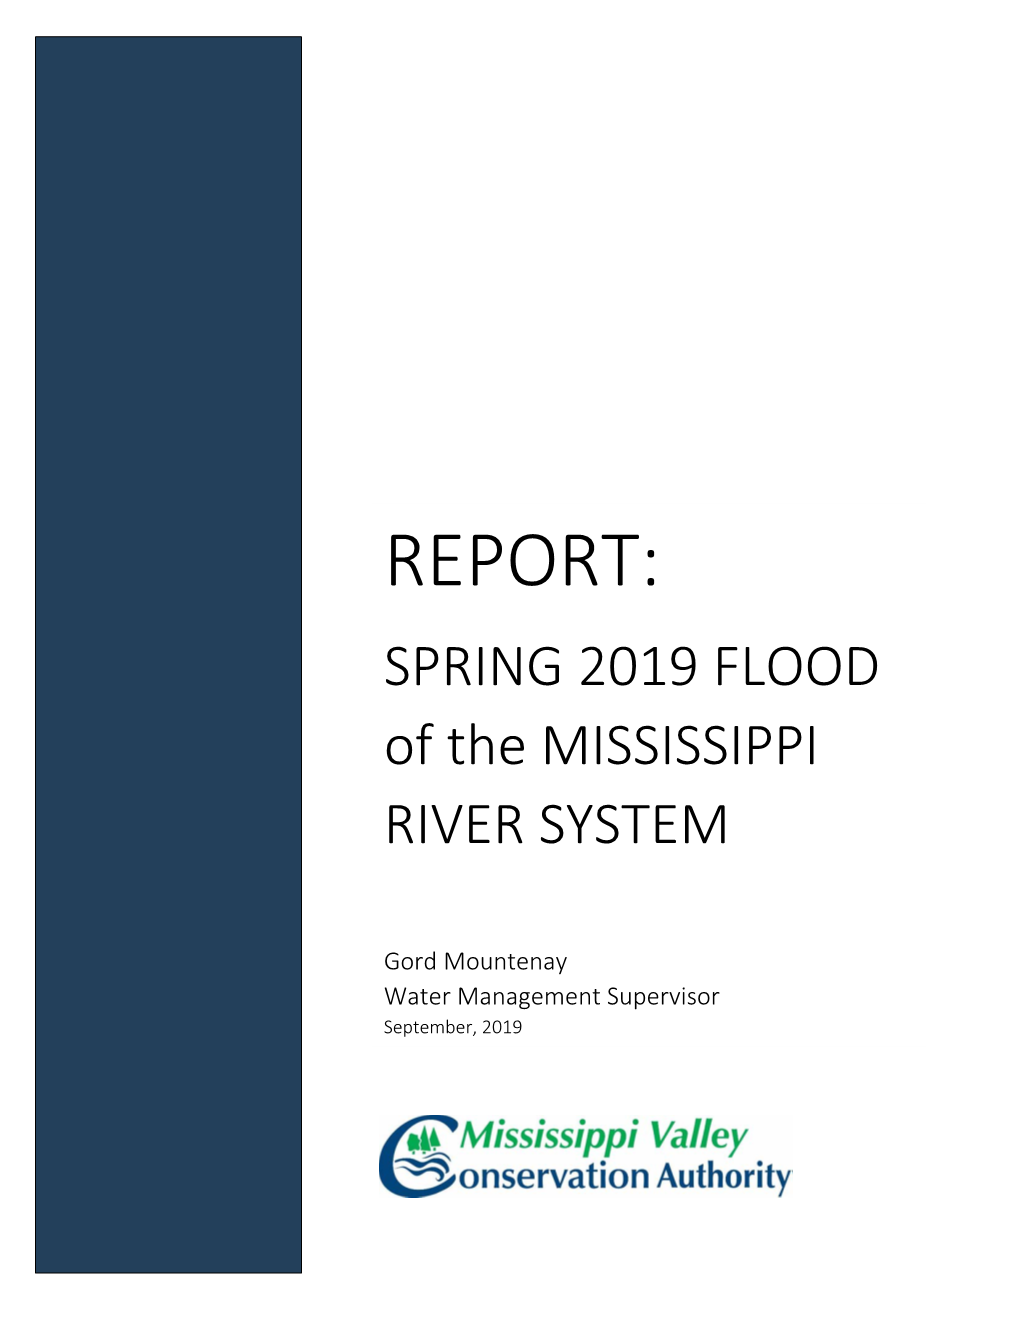 Spring 2019 Mississippi River Flood